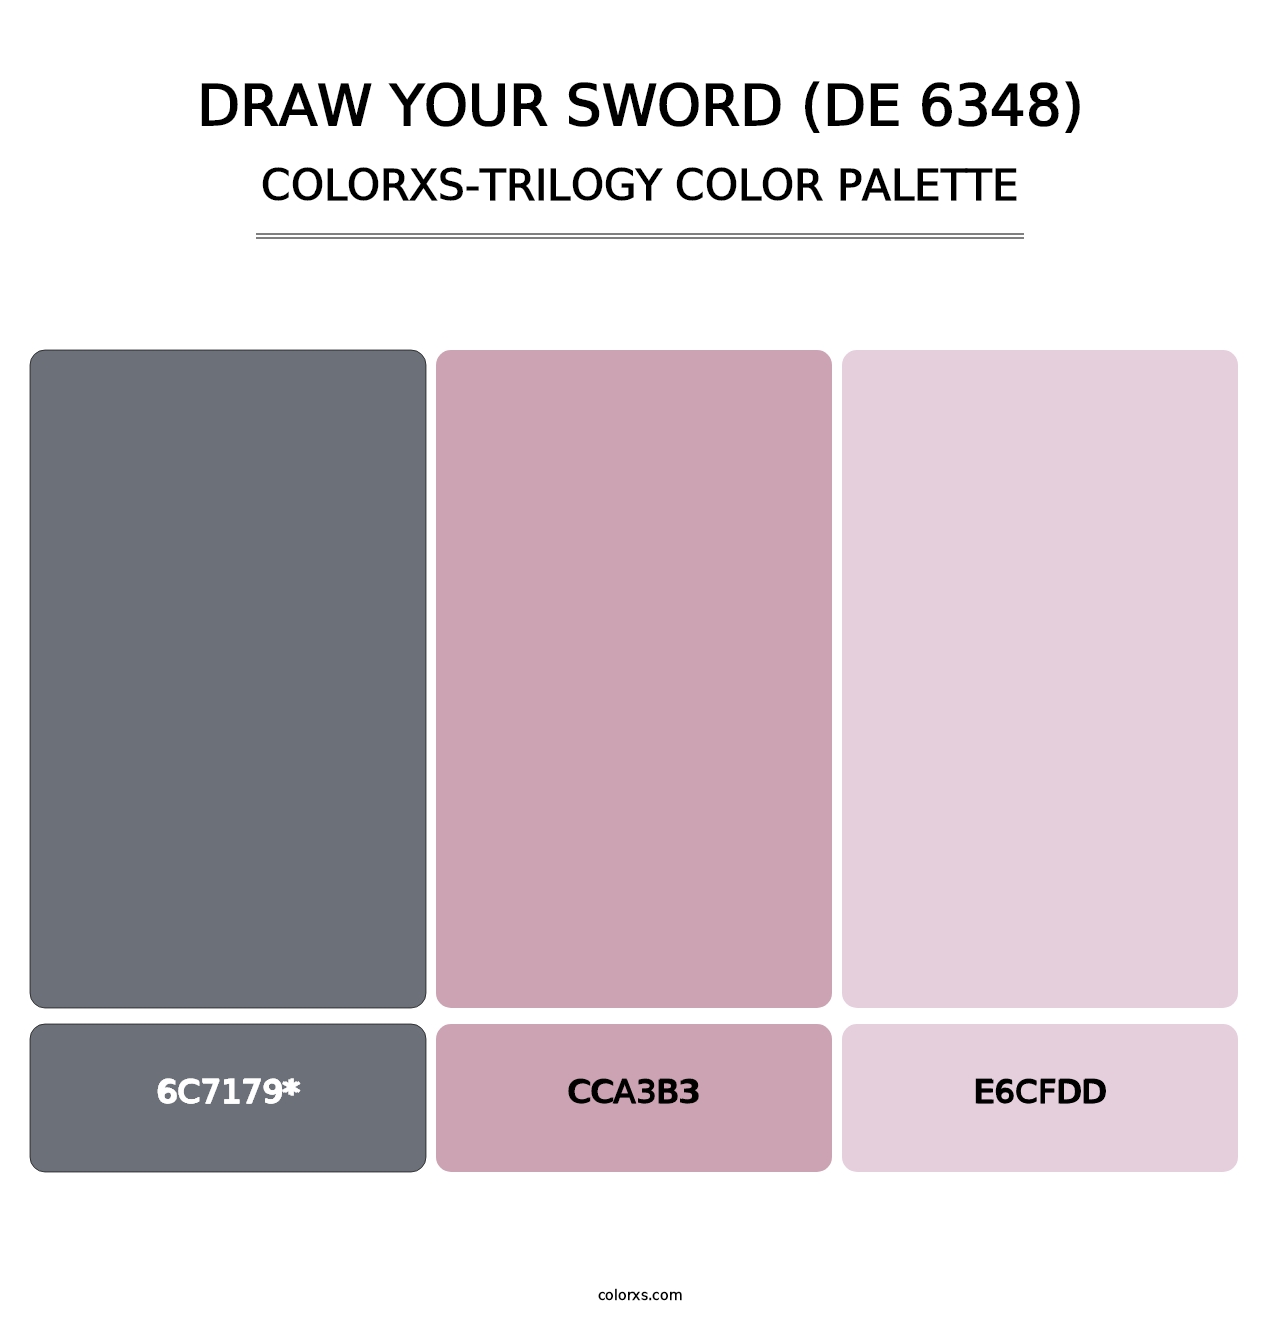 Draw Your Sword (DE 6348) - Colorxs Trilogy Palette